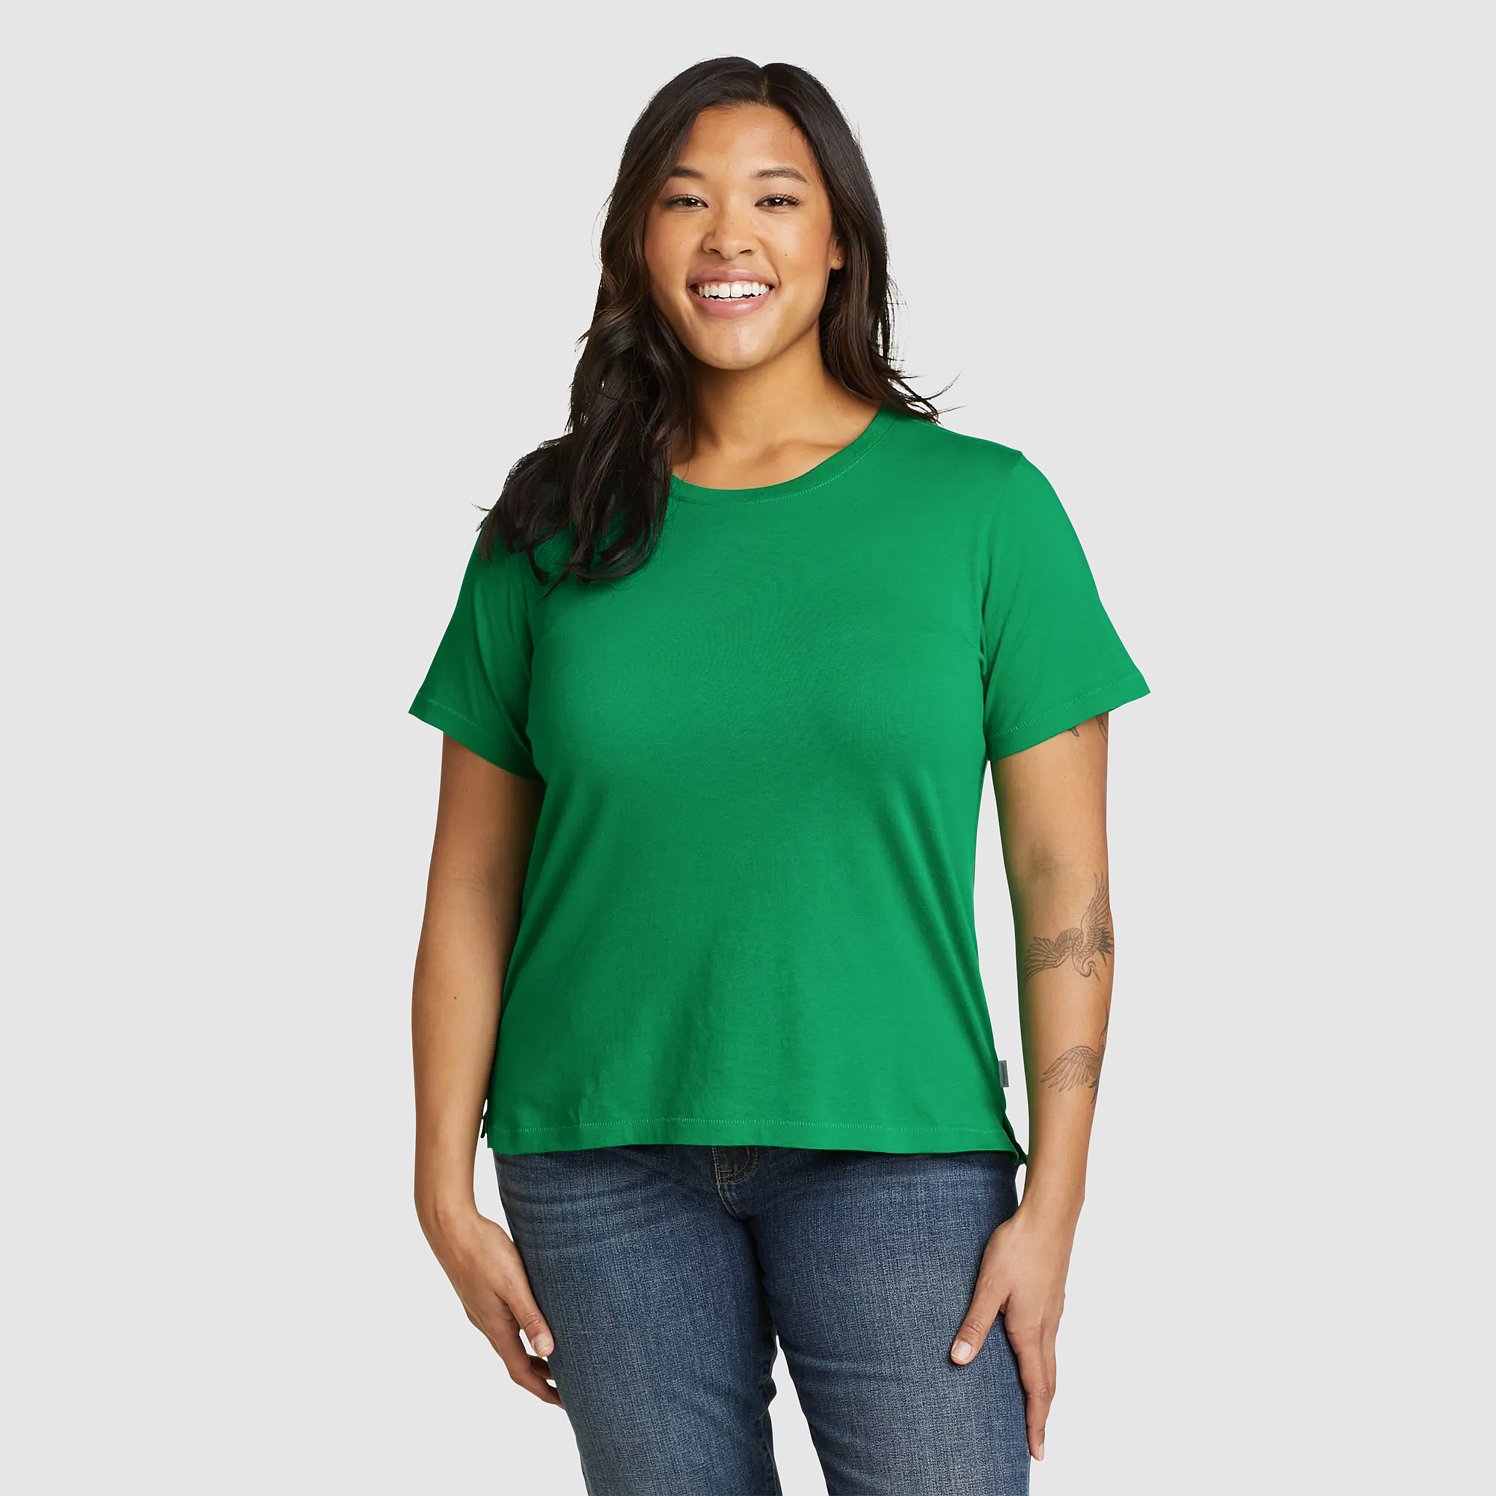 Eddie Bauer Women's Everyday Essentials Short Sleeve T-Shirt- Grass - Size XS